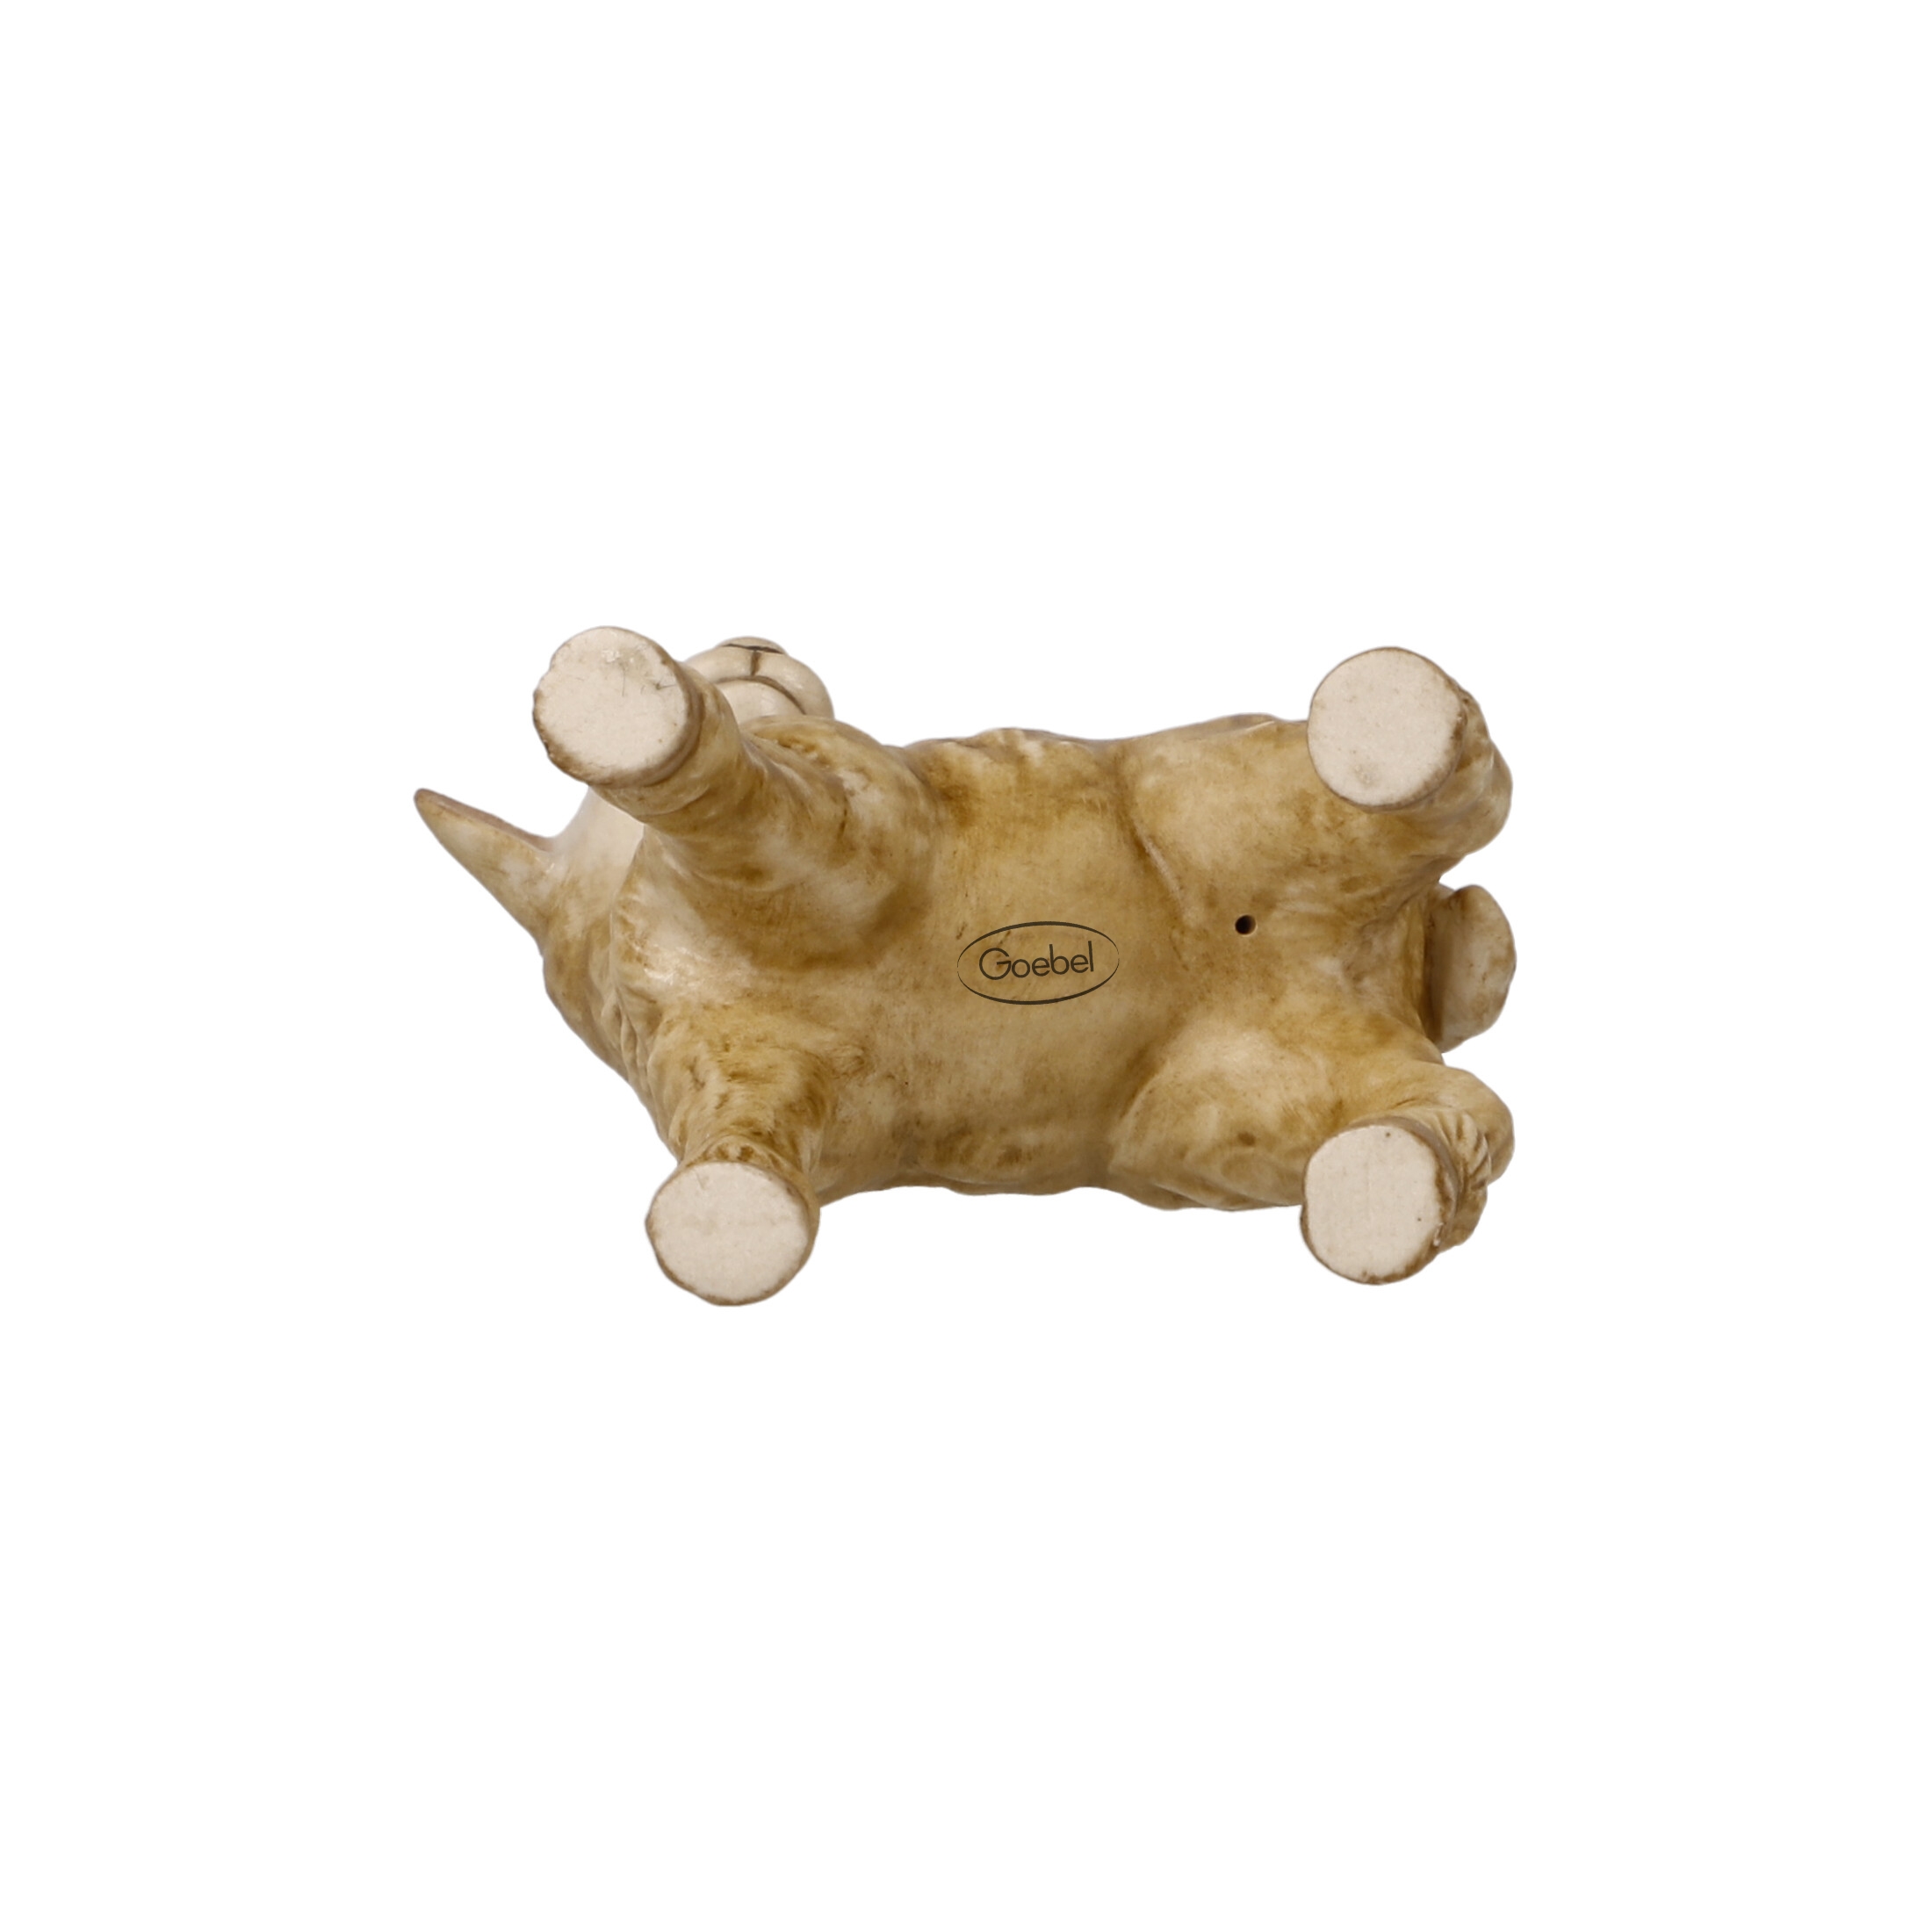 Krippe Krippenfigur Tier Goebel - Schaf Dekoralia.de Porzellan